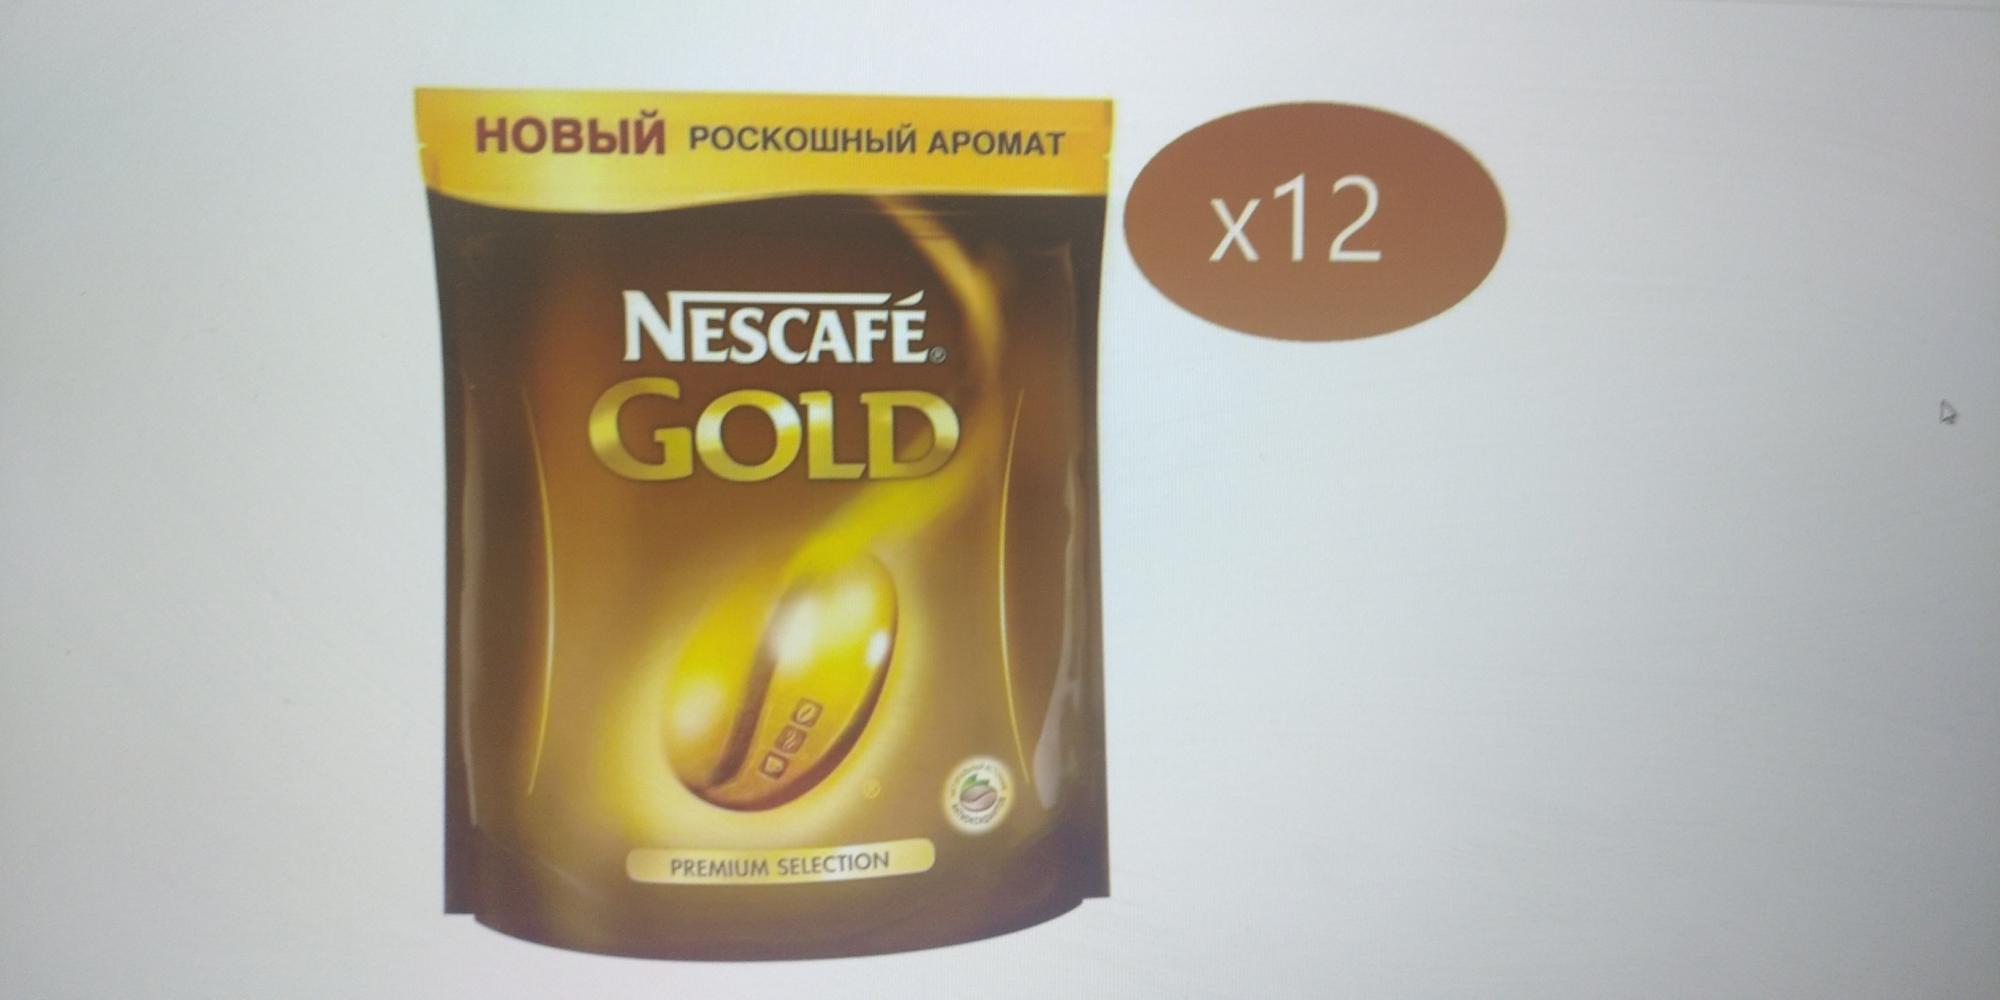 Nescafe gold 190 г. Nescafe Gold 60 гр. Nescafe Gold 900 гр купить. Nescafe Gold кофе пакет 60 грамм. Кофе Нескафе Голд 190 гр в пакете.